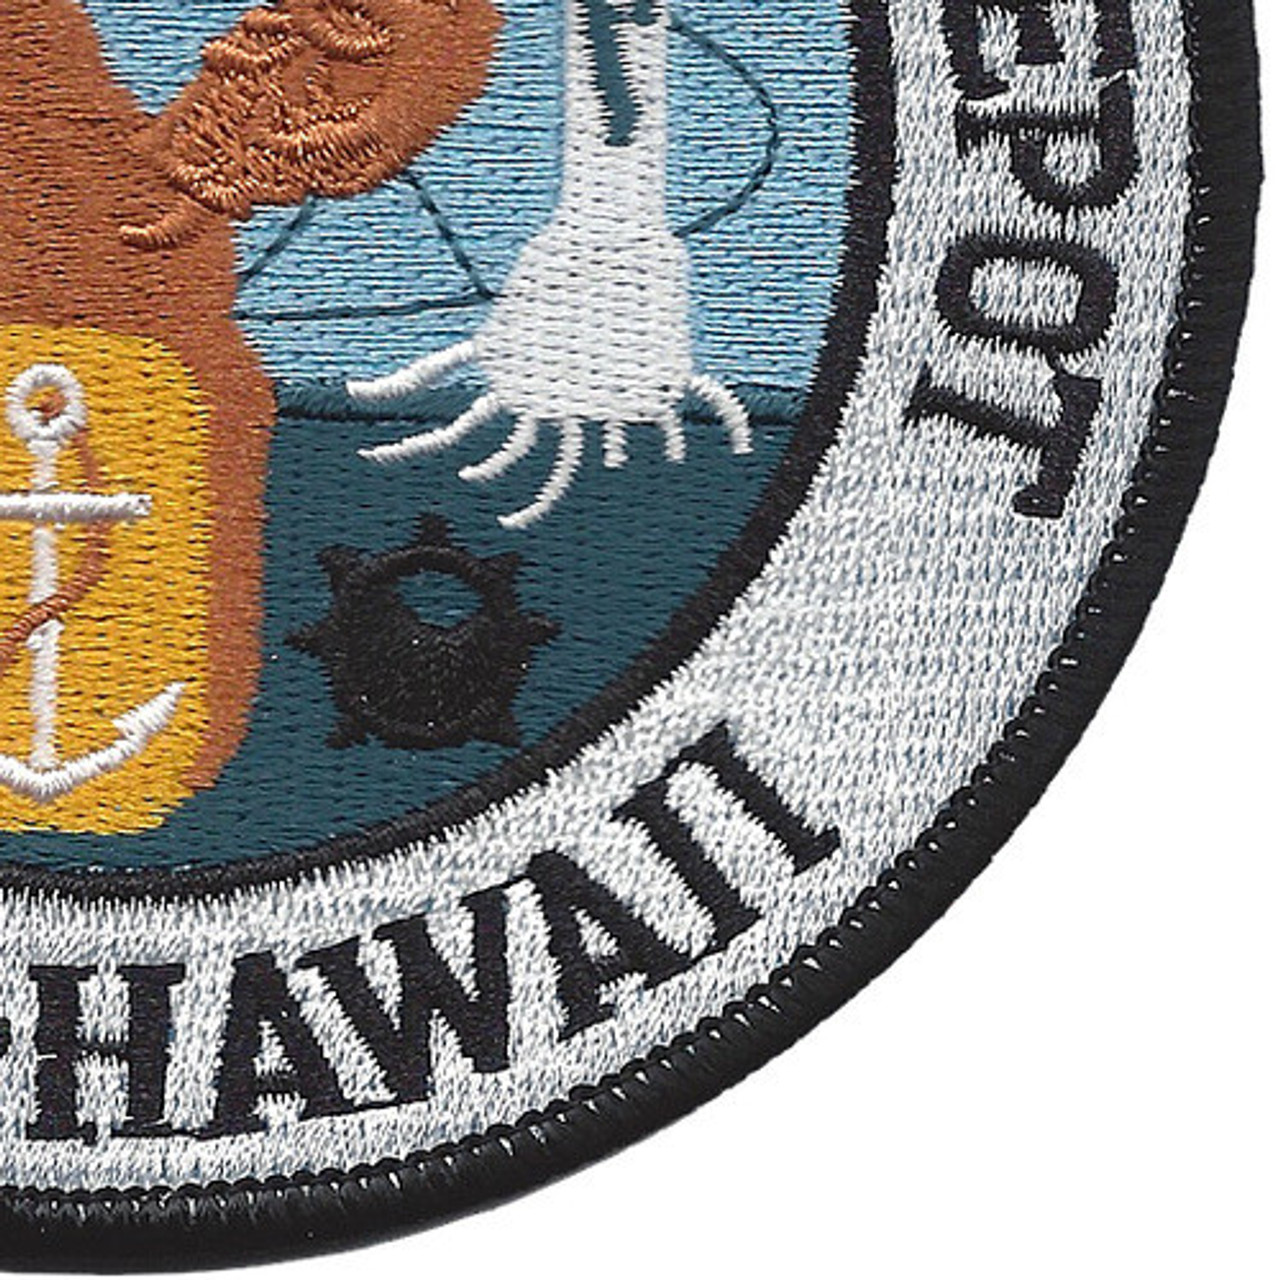 Naval Ammunition Depot Oahu Hawaii Patch